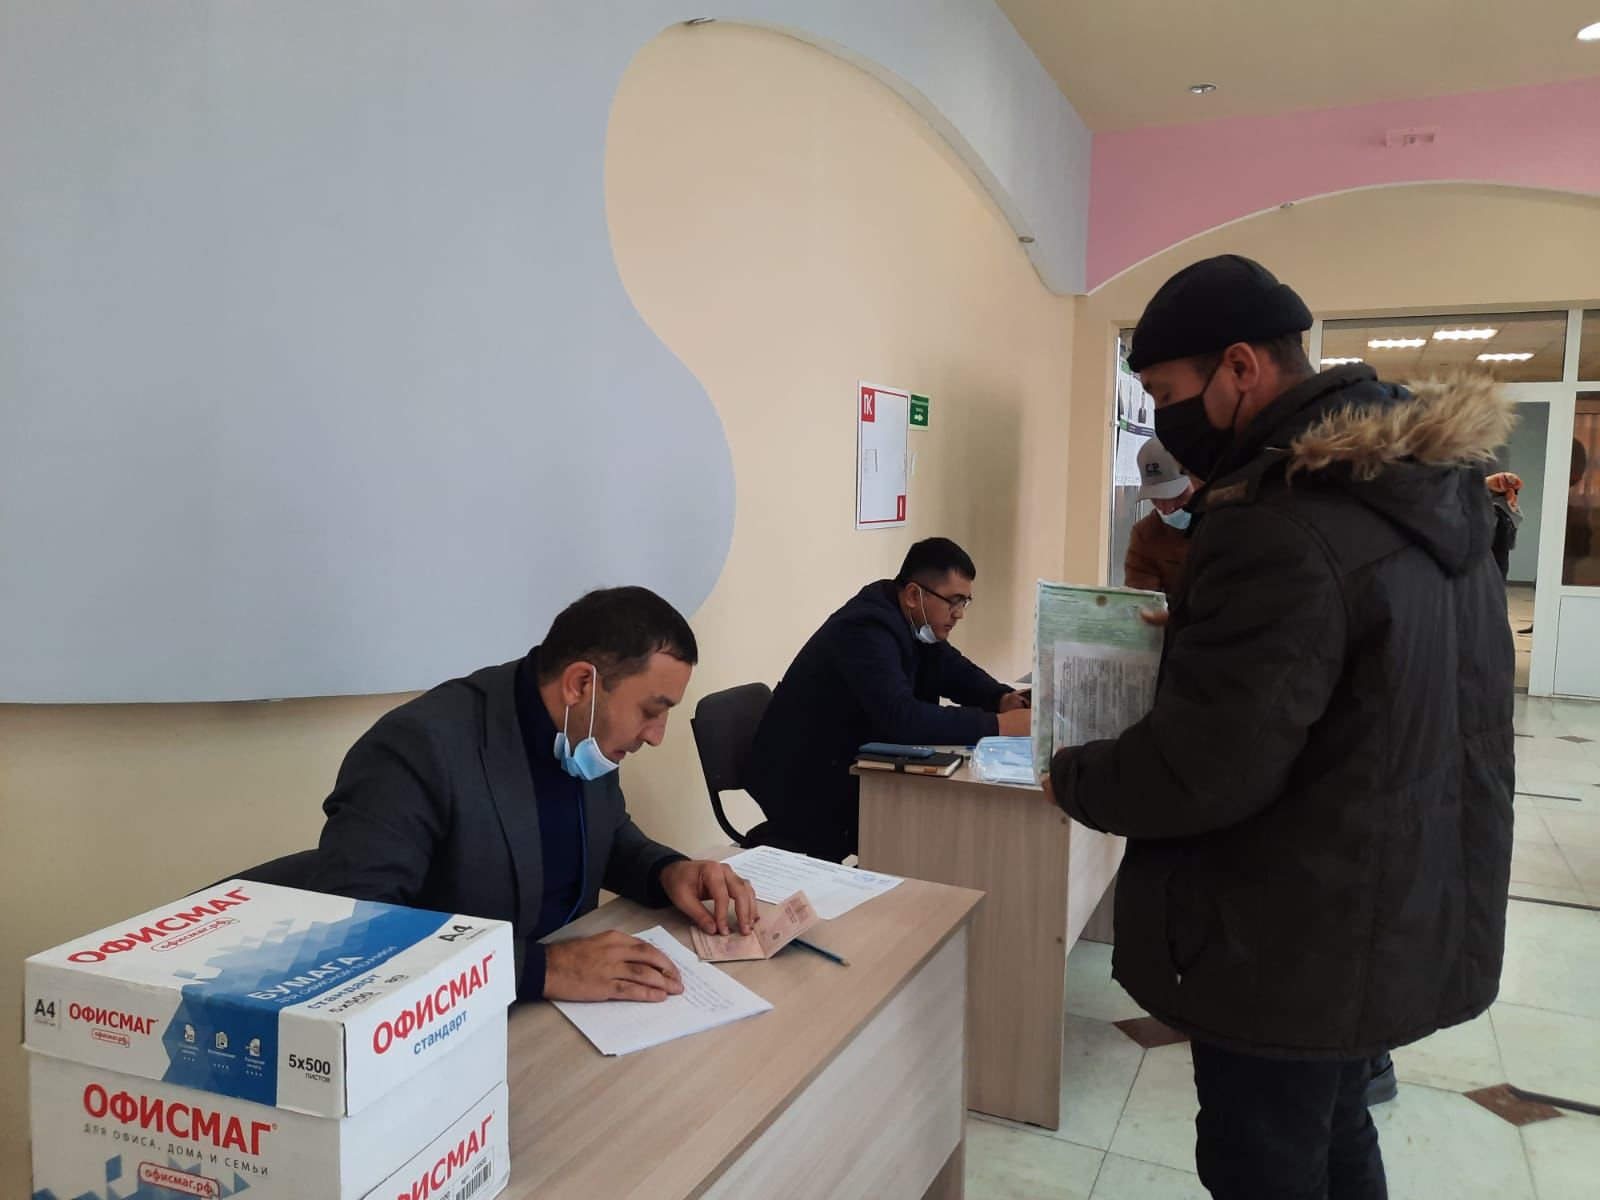 Үзбәкстан республикасы гражданнары җыелышып сайлауга киттеләр